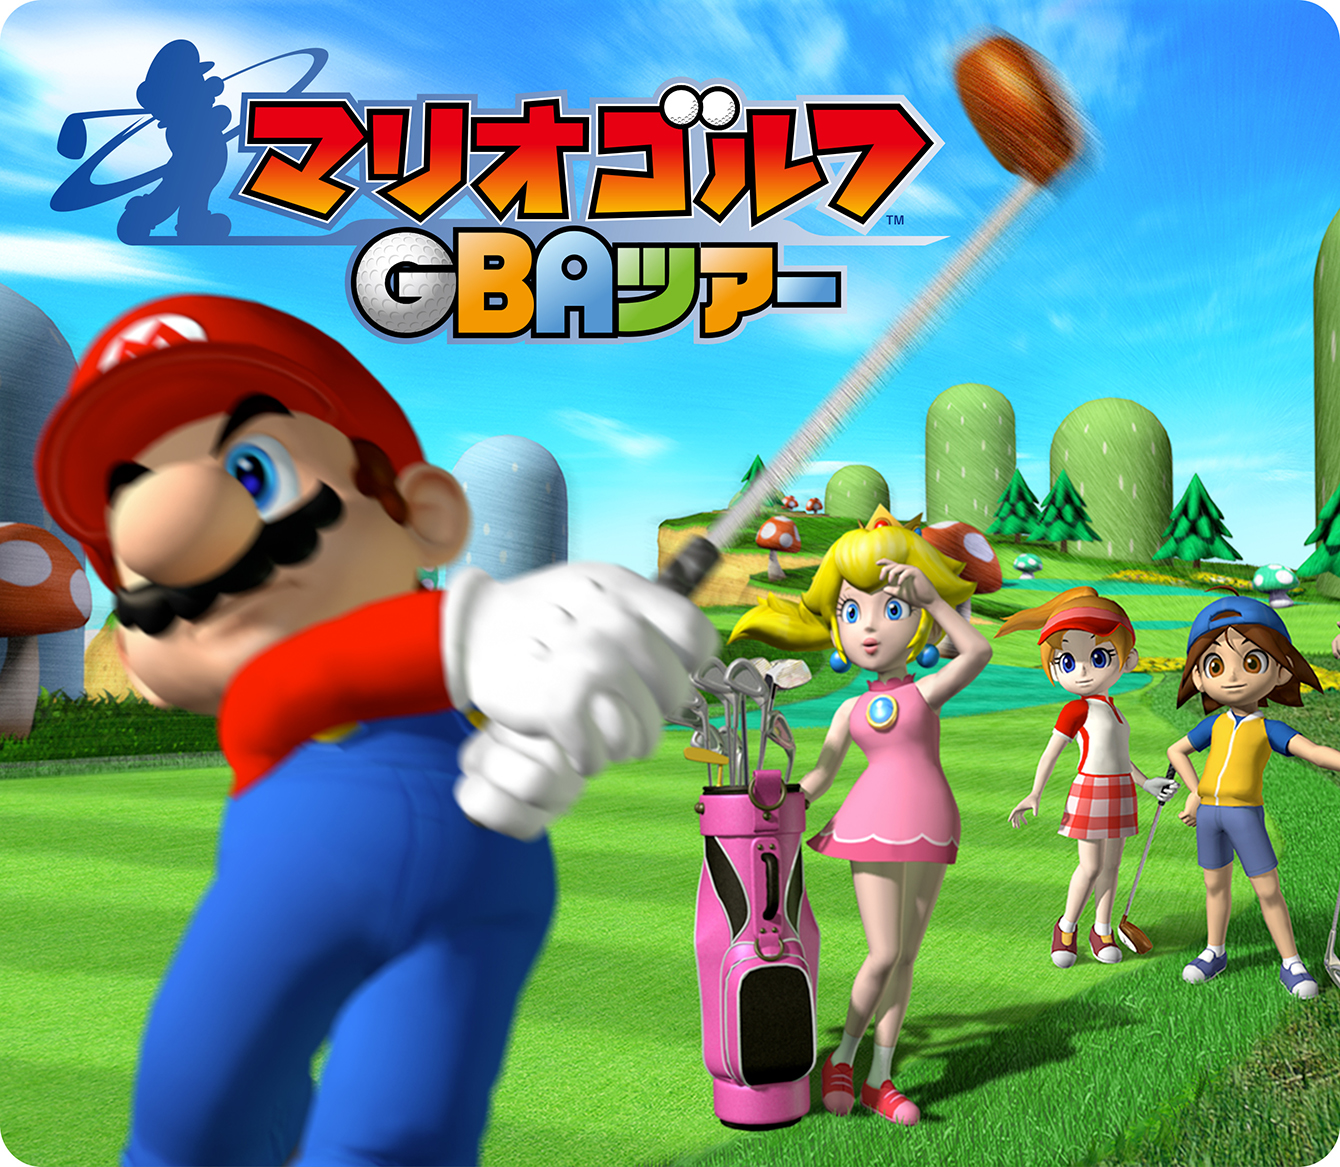 マリオゴルフGBAツアー | ゲームアーカイブ | マリオポータル | Nintendo